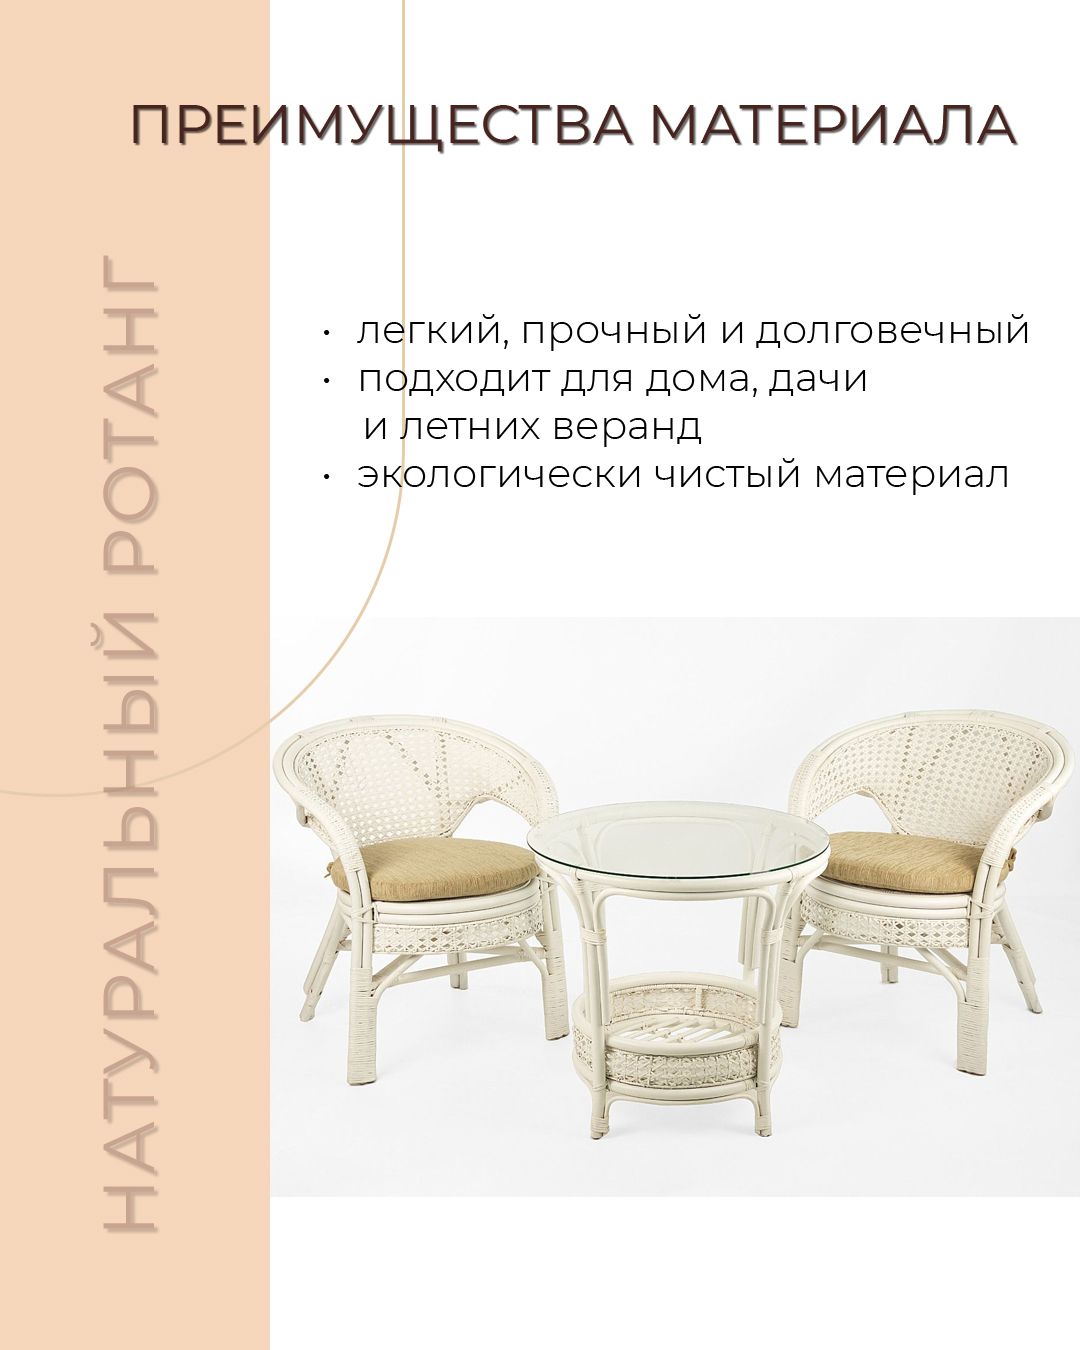 Комплект мебели из ротанга Пеланги 02 15 дуэт белый матовый